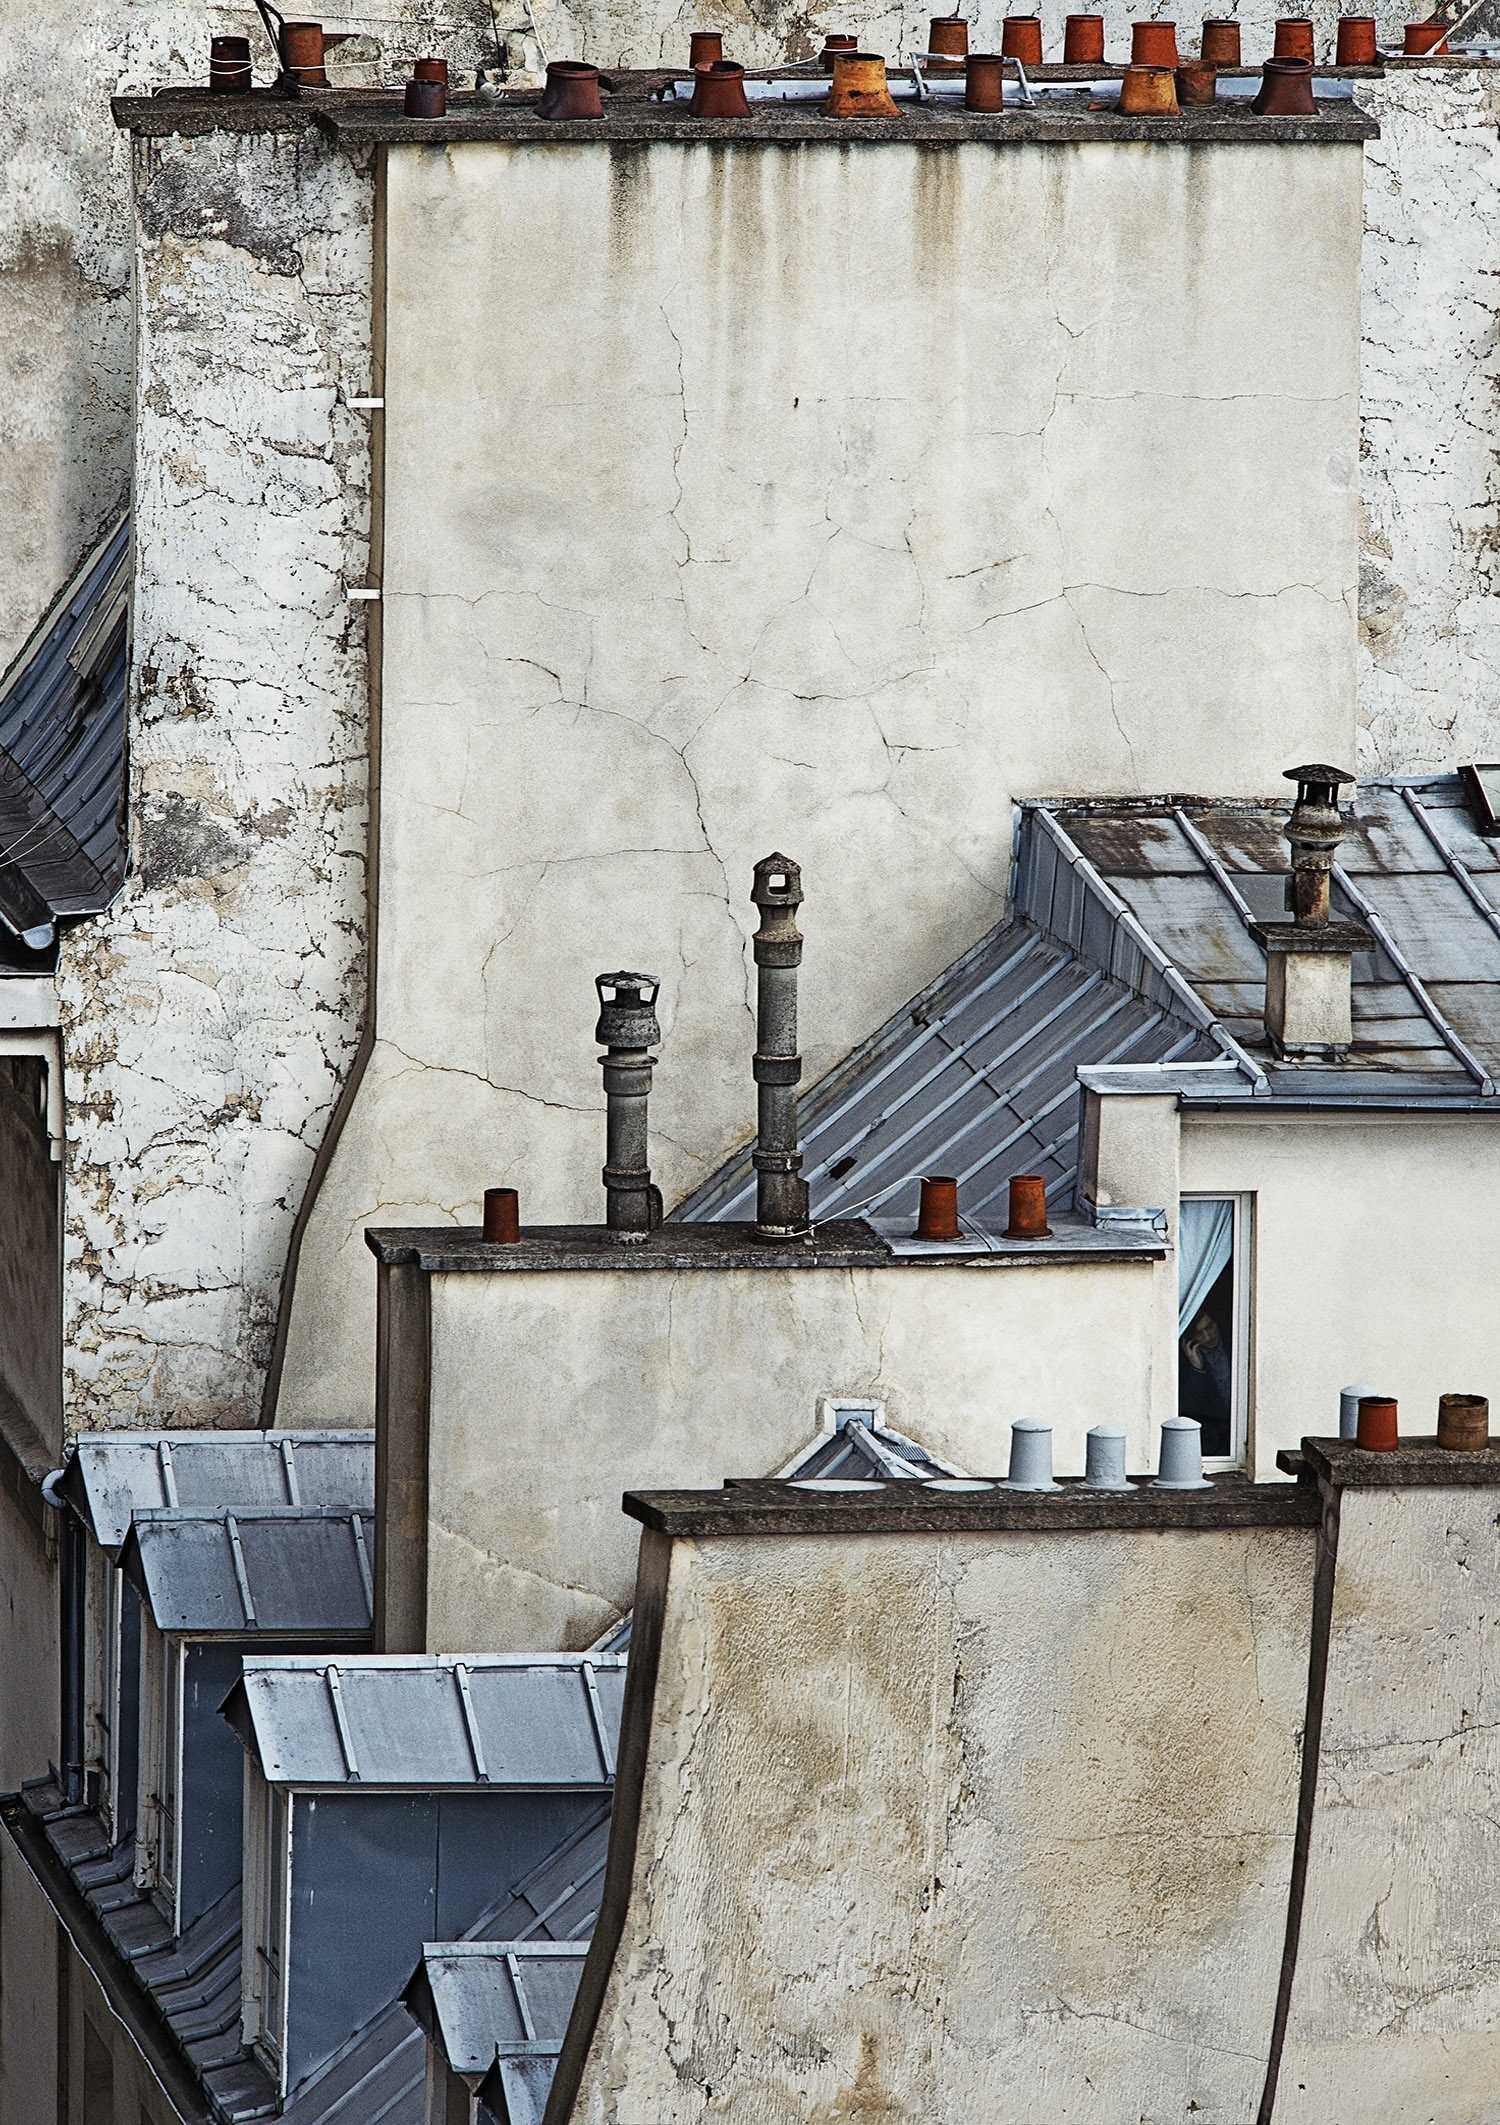 Párizs kéményei - Michael Wolf fotói